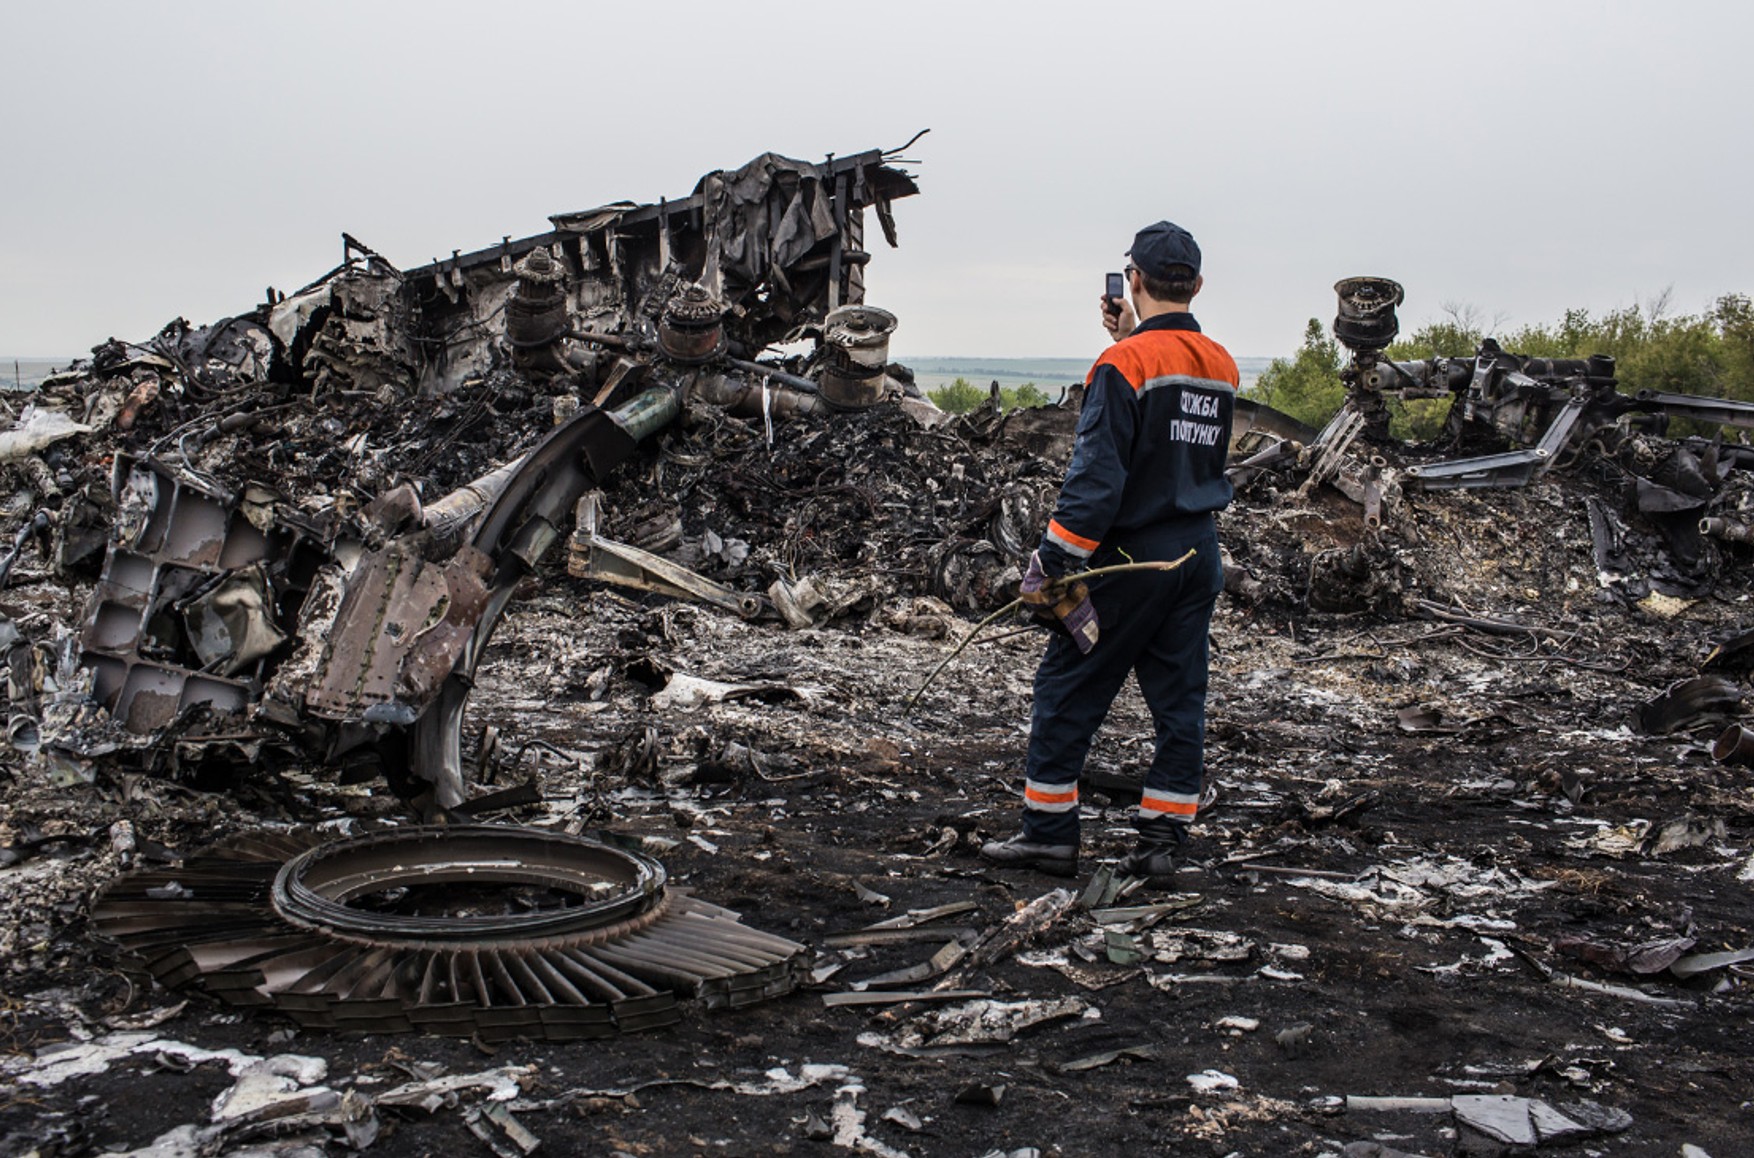 Путин лично мог принимать решение о поставке «сепаратистам» ЗРК «Бук», из которого сбили Боинг MH17, расследование приостановлено — WP